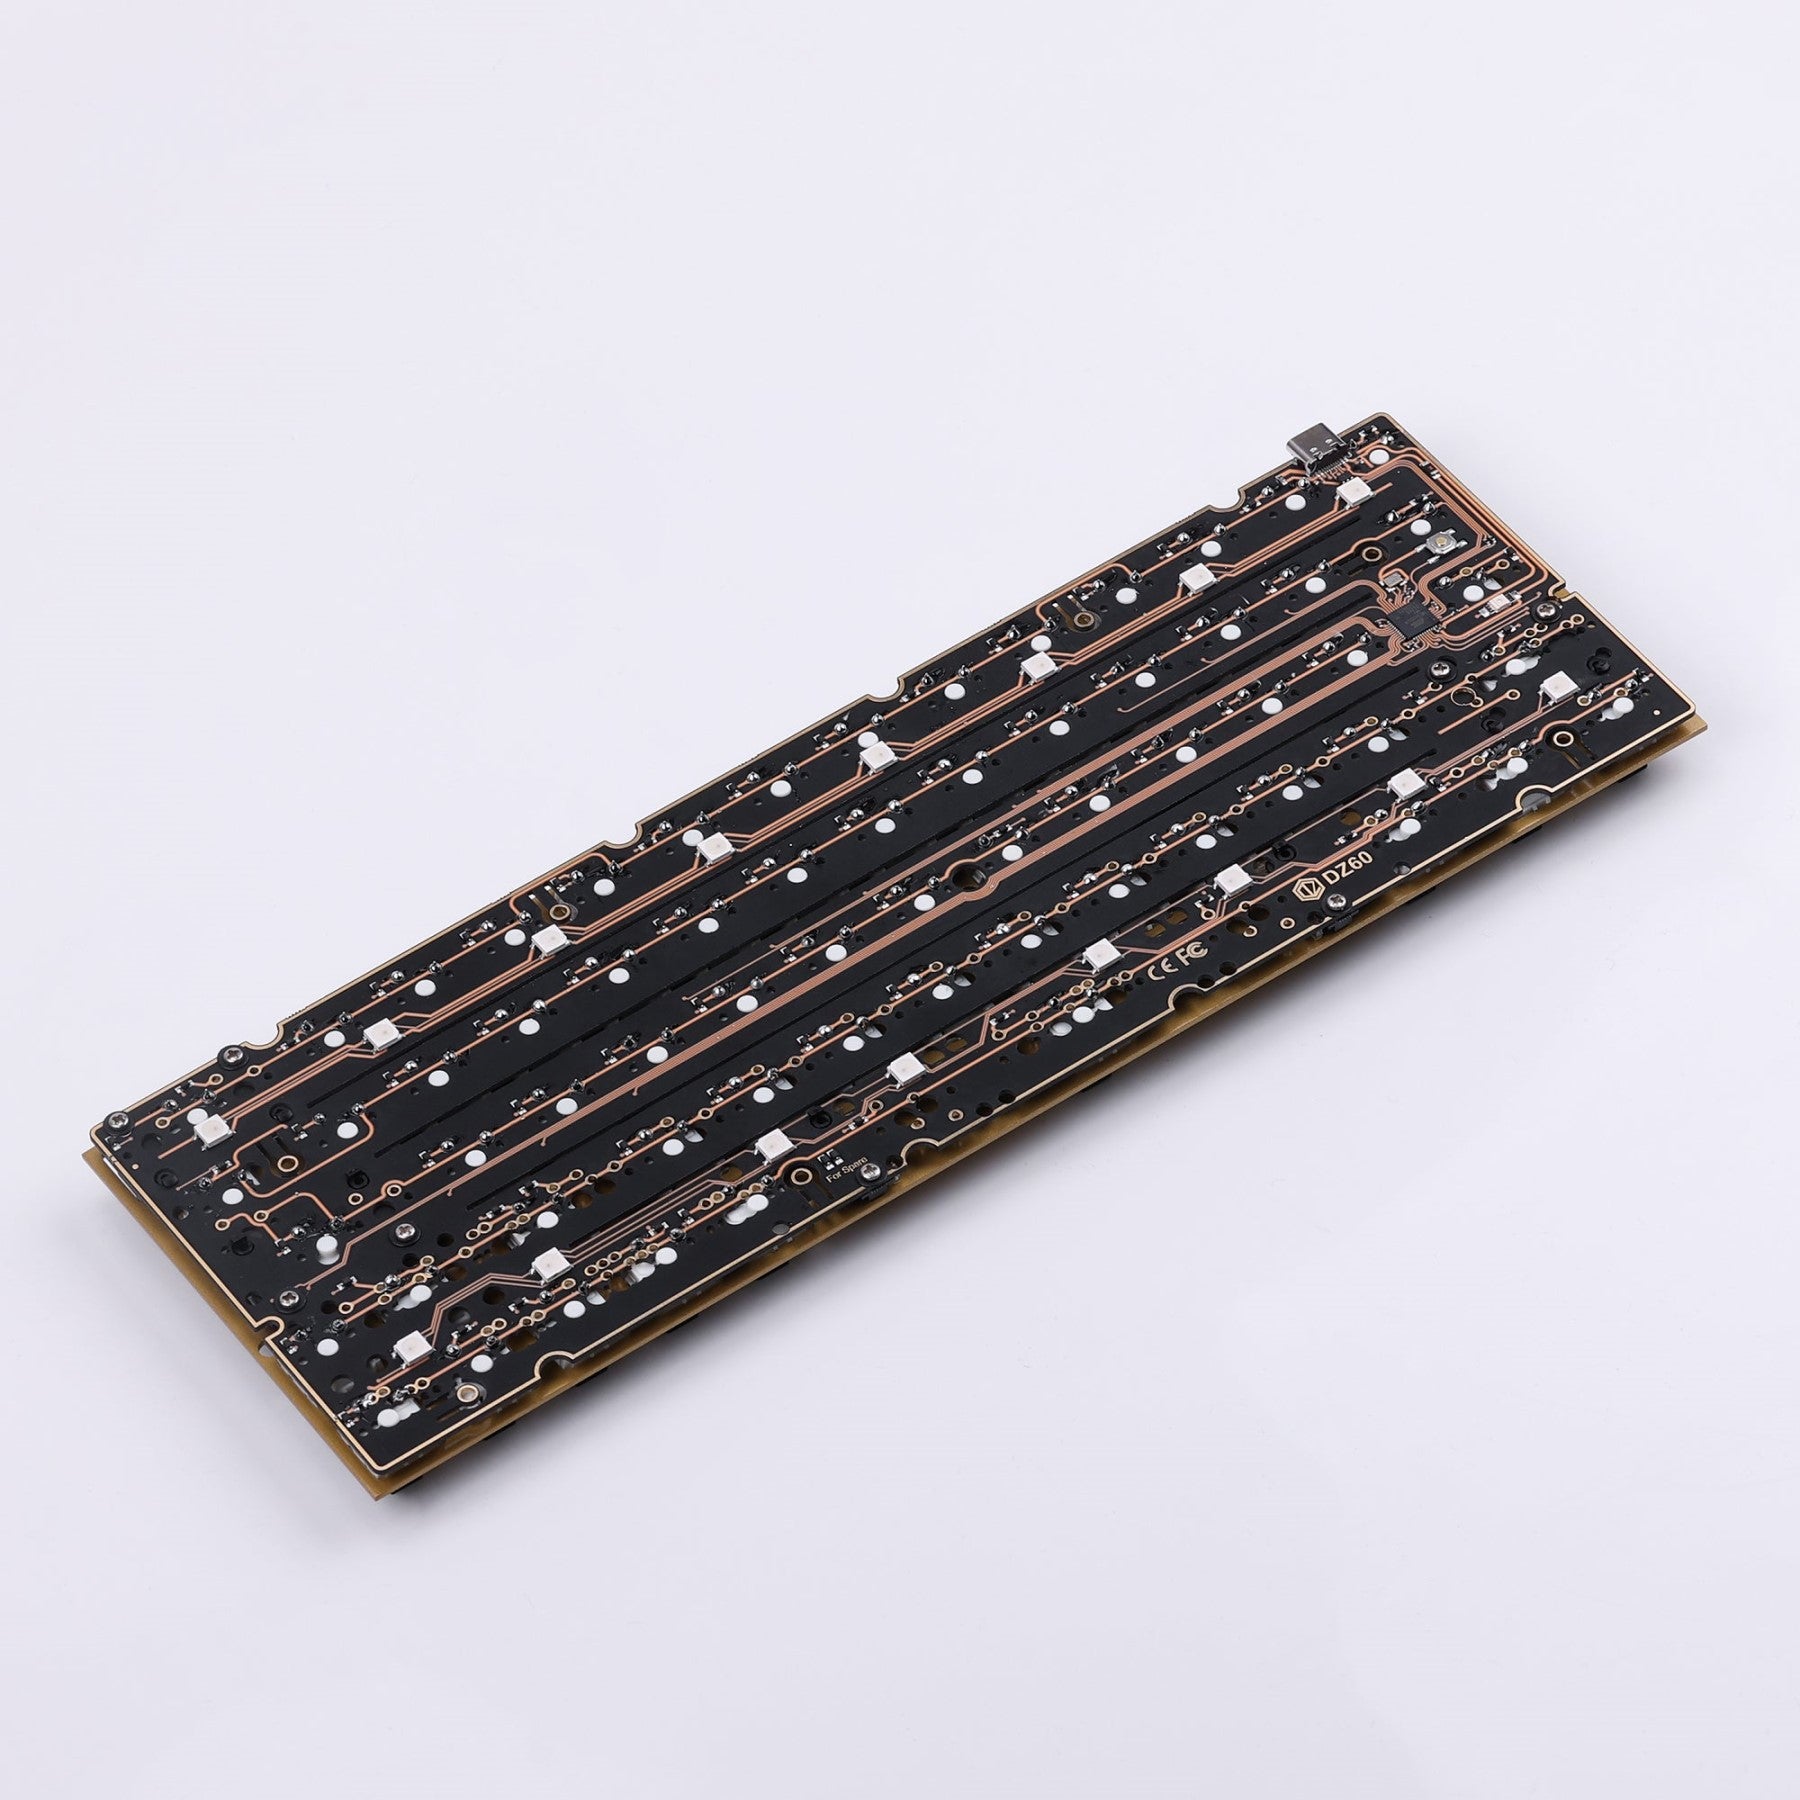 60% DZ60 V2 Flex Cut Mechanical Keyboard PCB